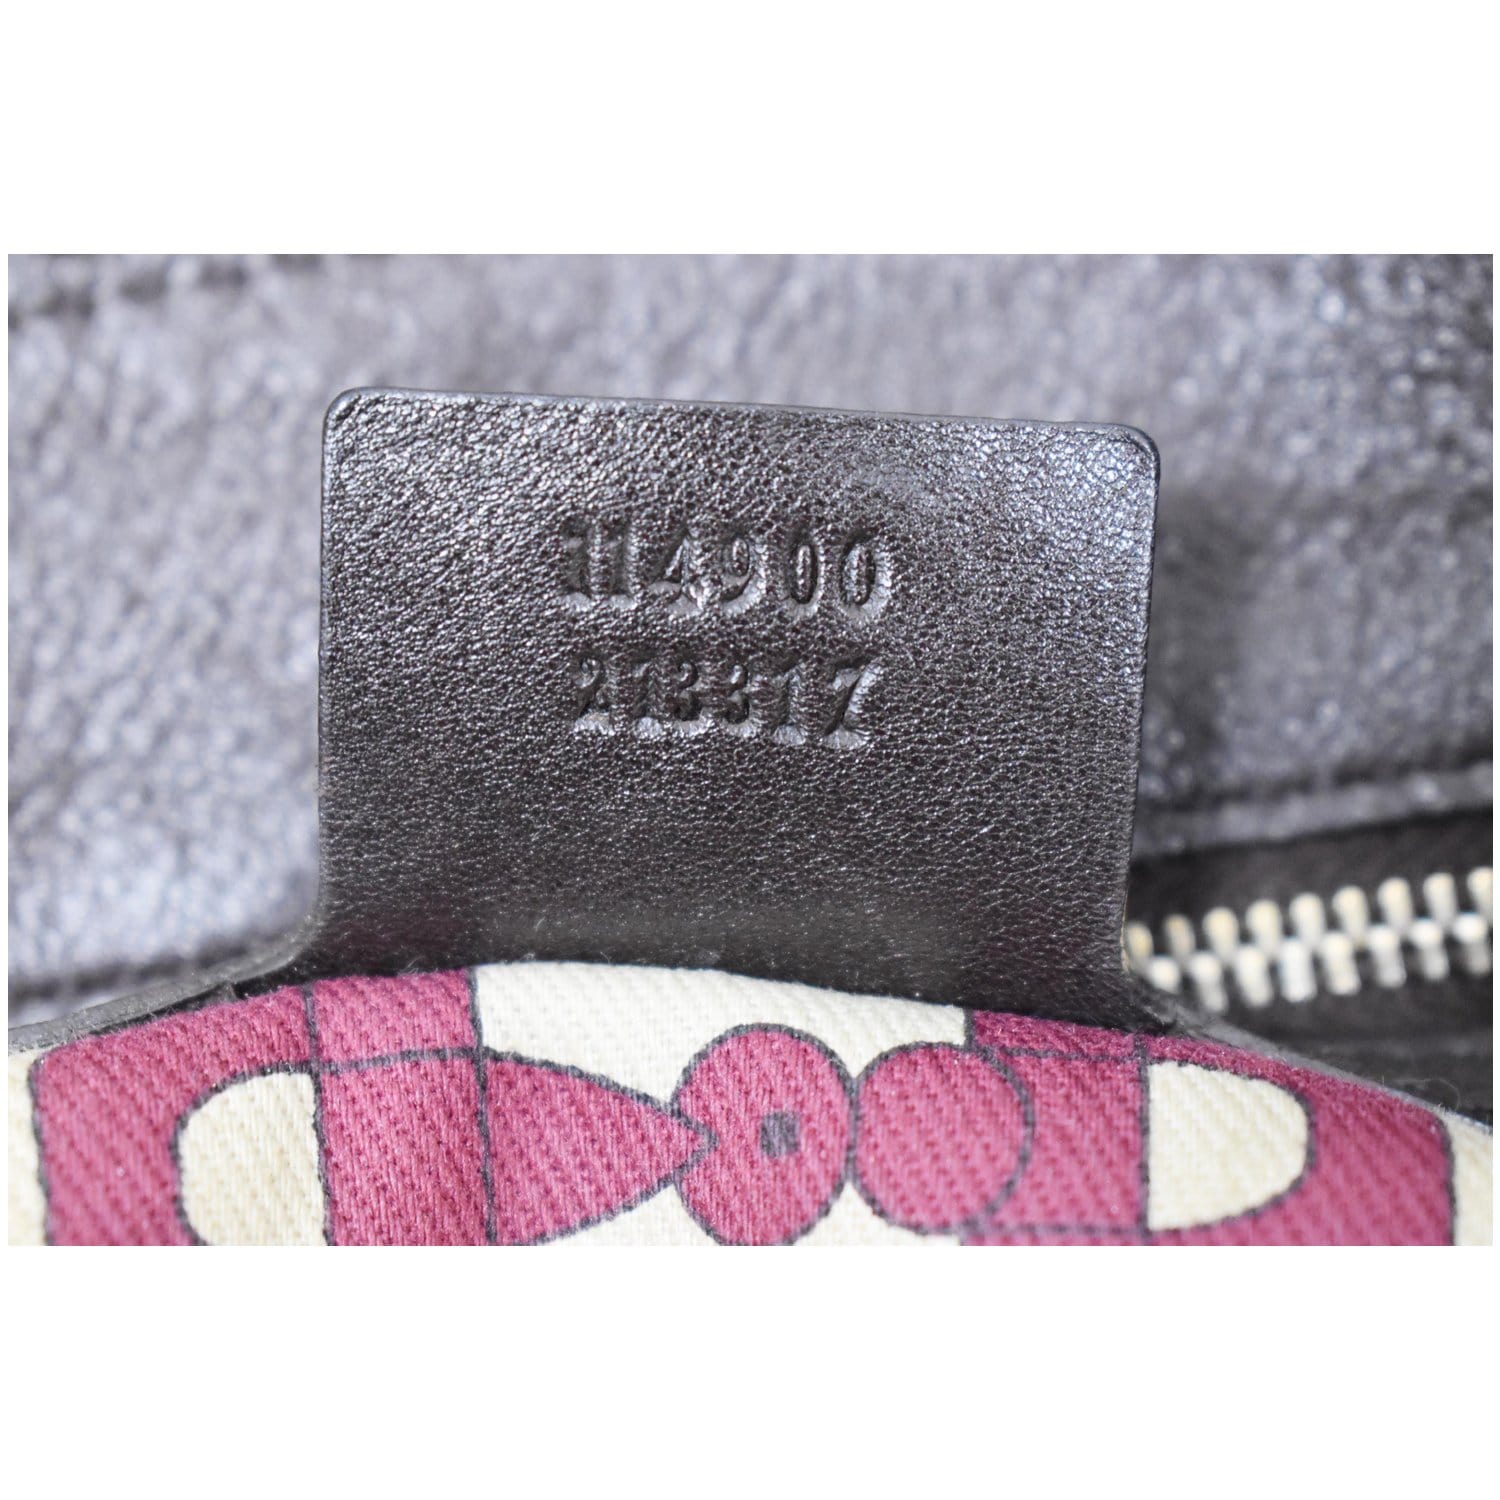 Gucci Medium Horsebit Hobo Bag - Brown Hobos, Handbags - GUC1243975